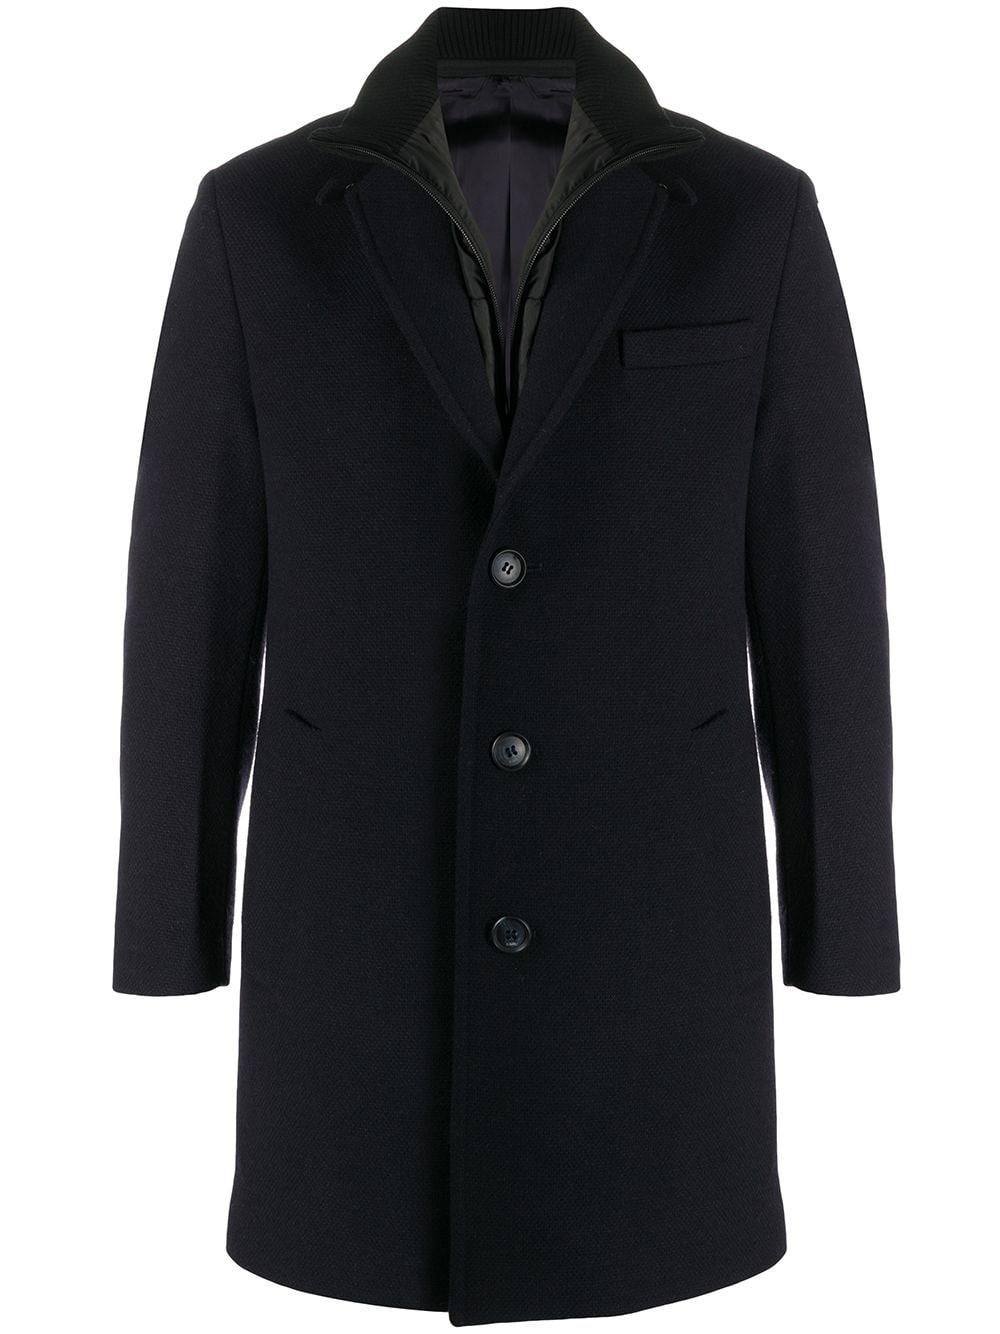 Karl Lagerfeld Wool Twister Coat in Blue for Men - Lyst